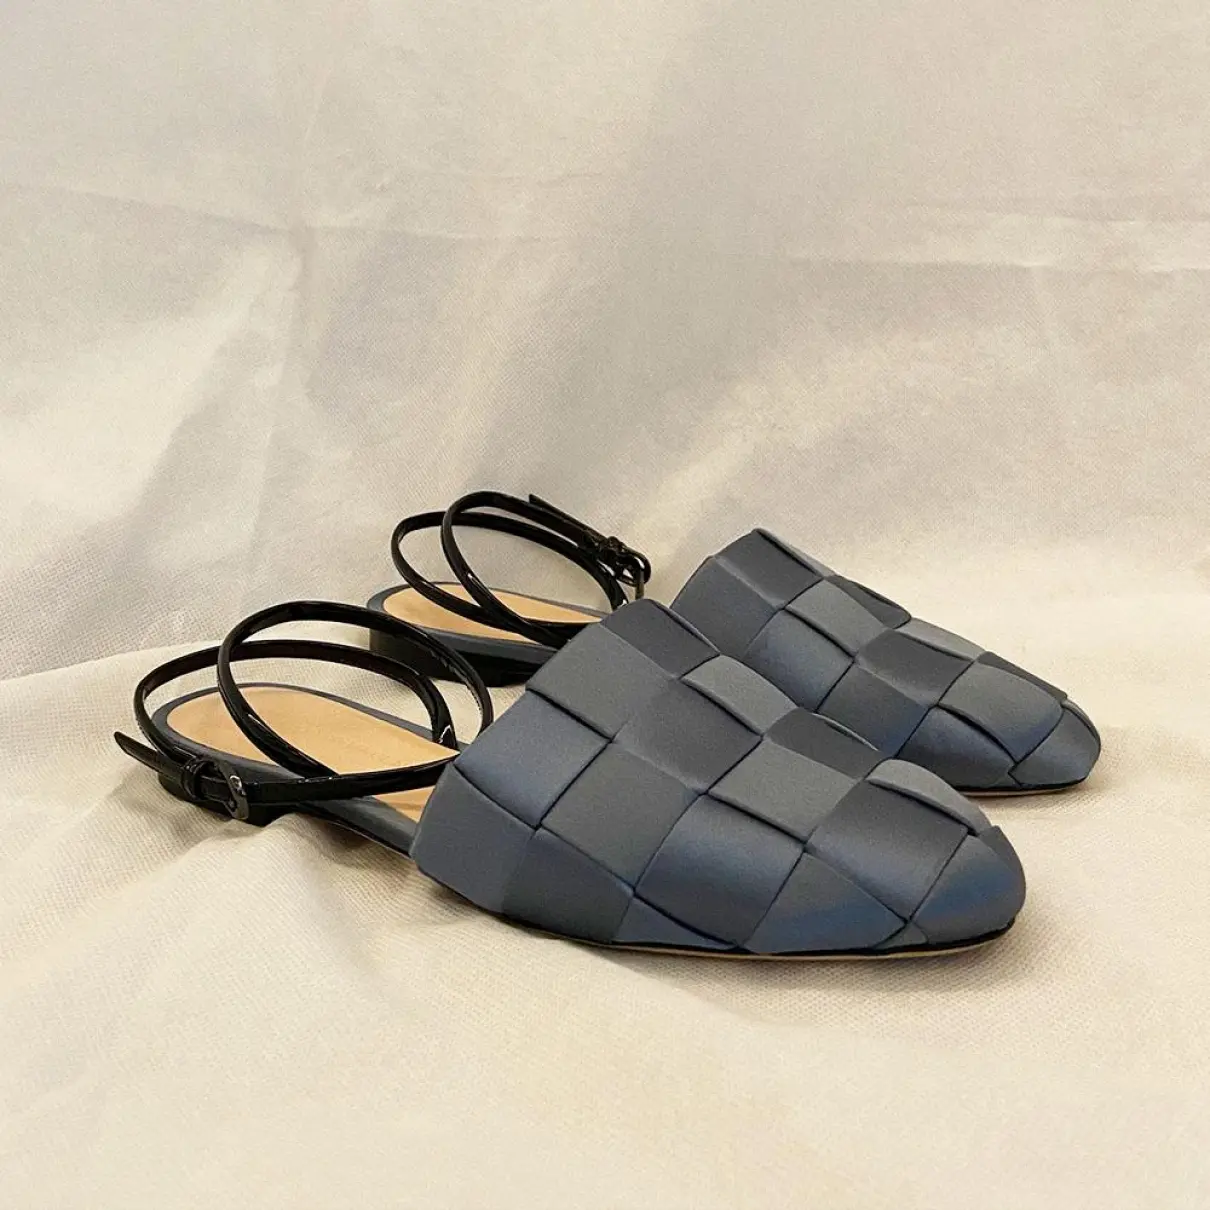 Buy Marco De Vincenzo Patent leather sandal online